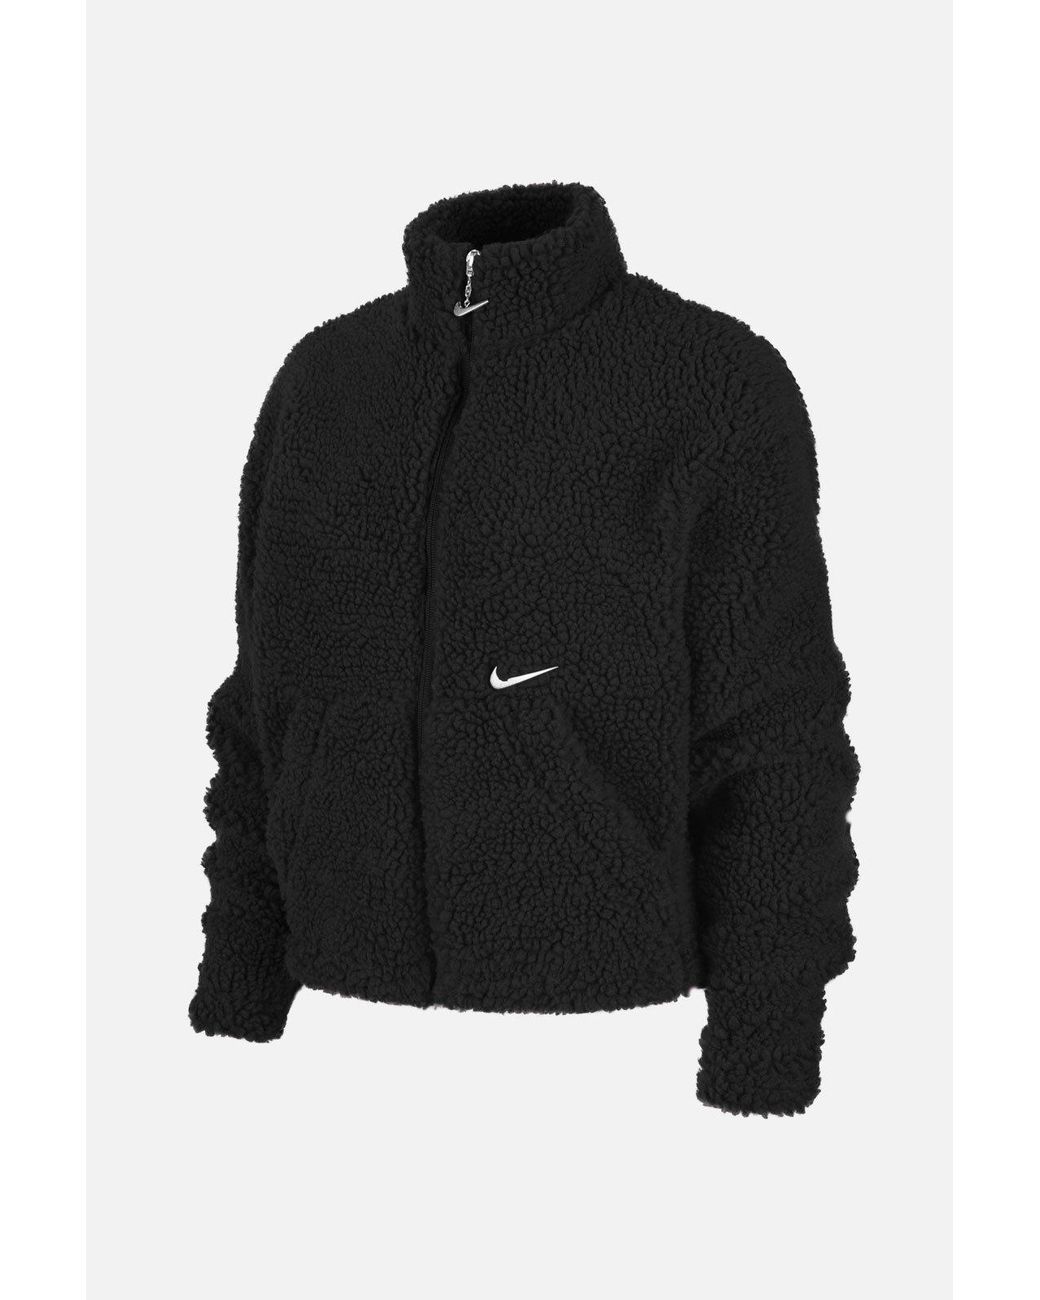 Nike Fleece Nsw Swoosh Jacket Sherpa in Black - Lyst